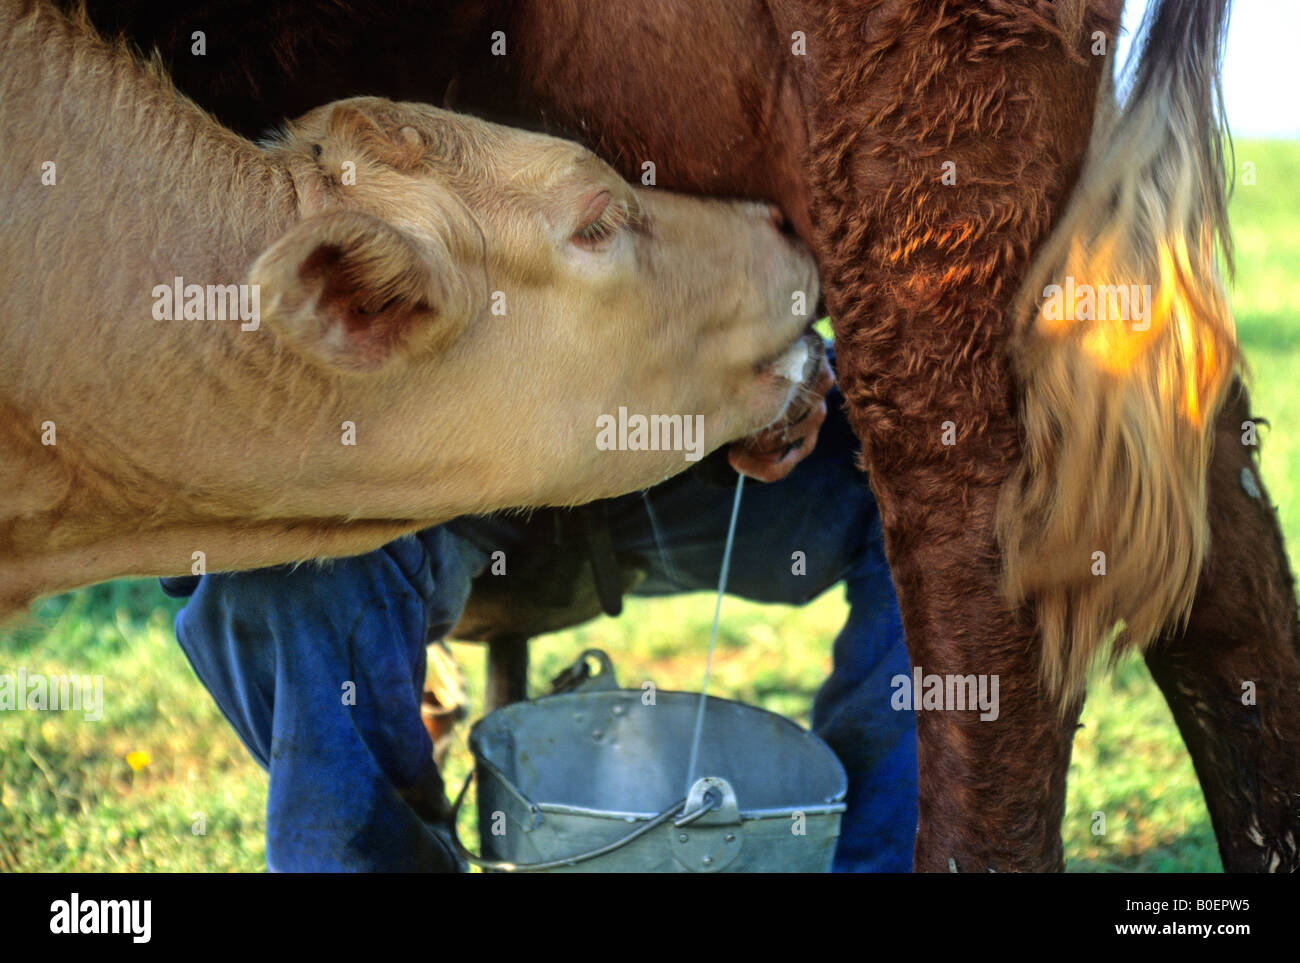 Ternero intenta beber leche, mientras que el agricultor en la leche de la madre Foto de stock